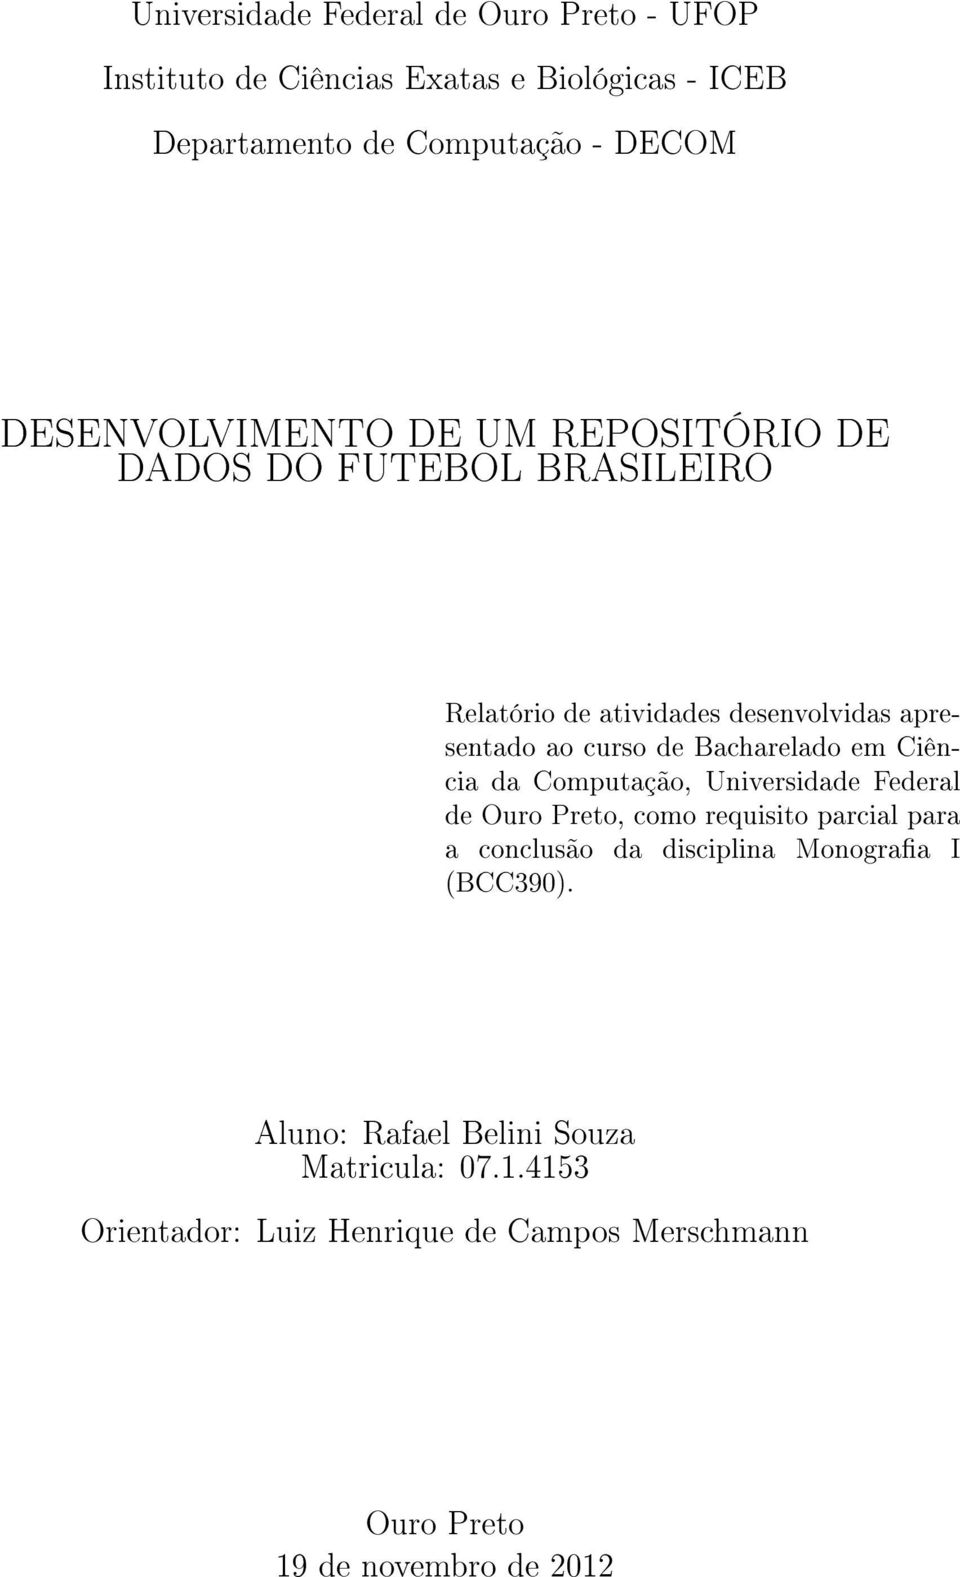 Bacharelado em Ciência da Computação, Universidade Federal de Ouro Preto, como requisito parcial para a conclusão da disciplina